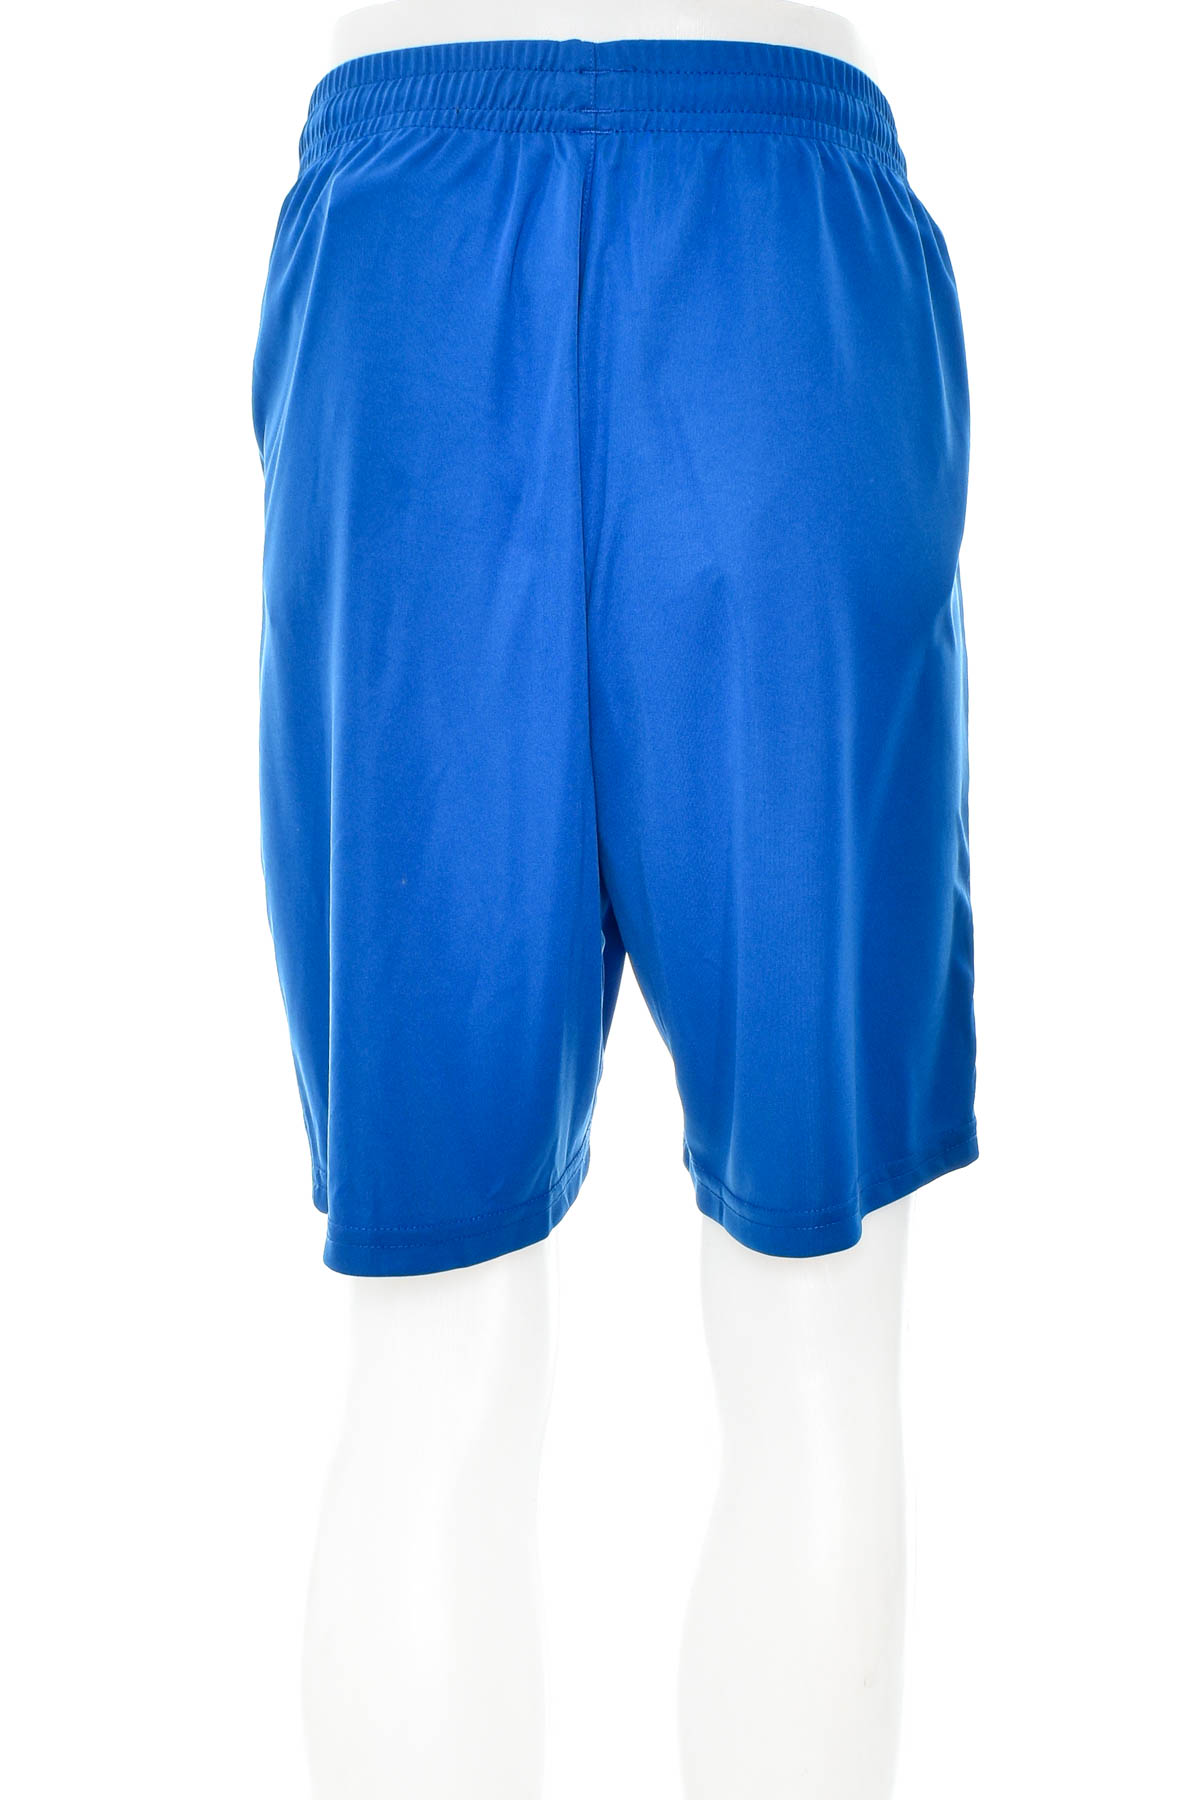 Men's shorts - Erima - 1